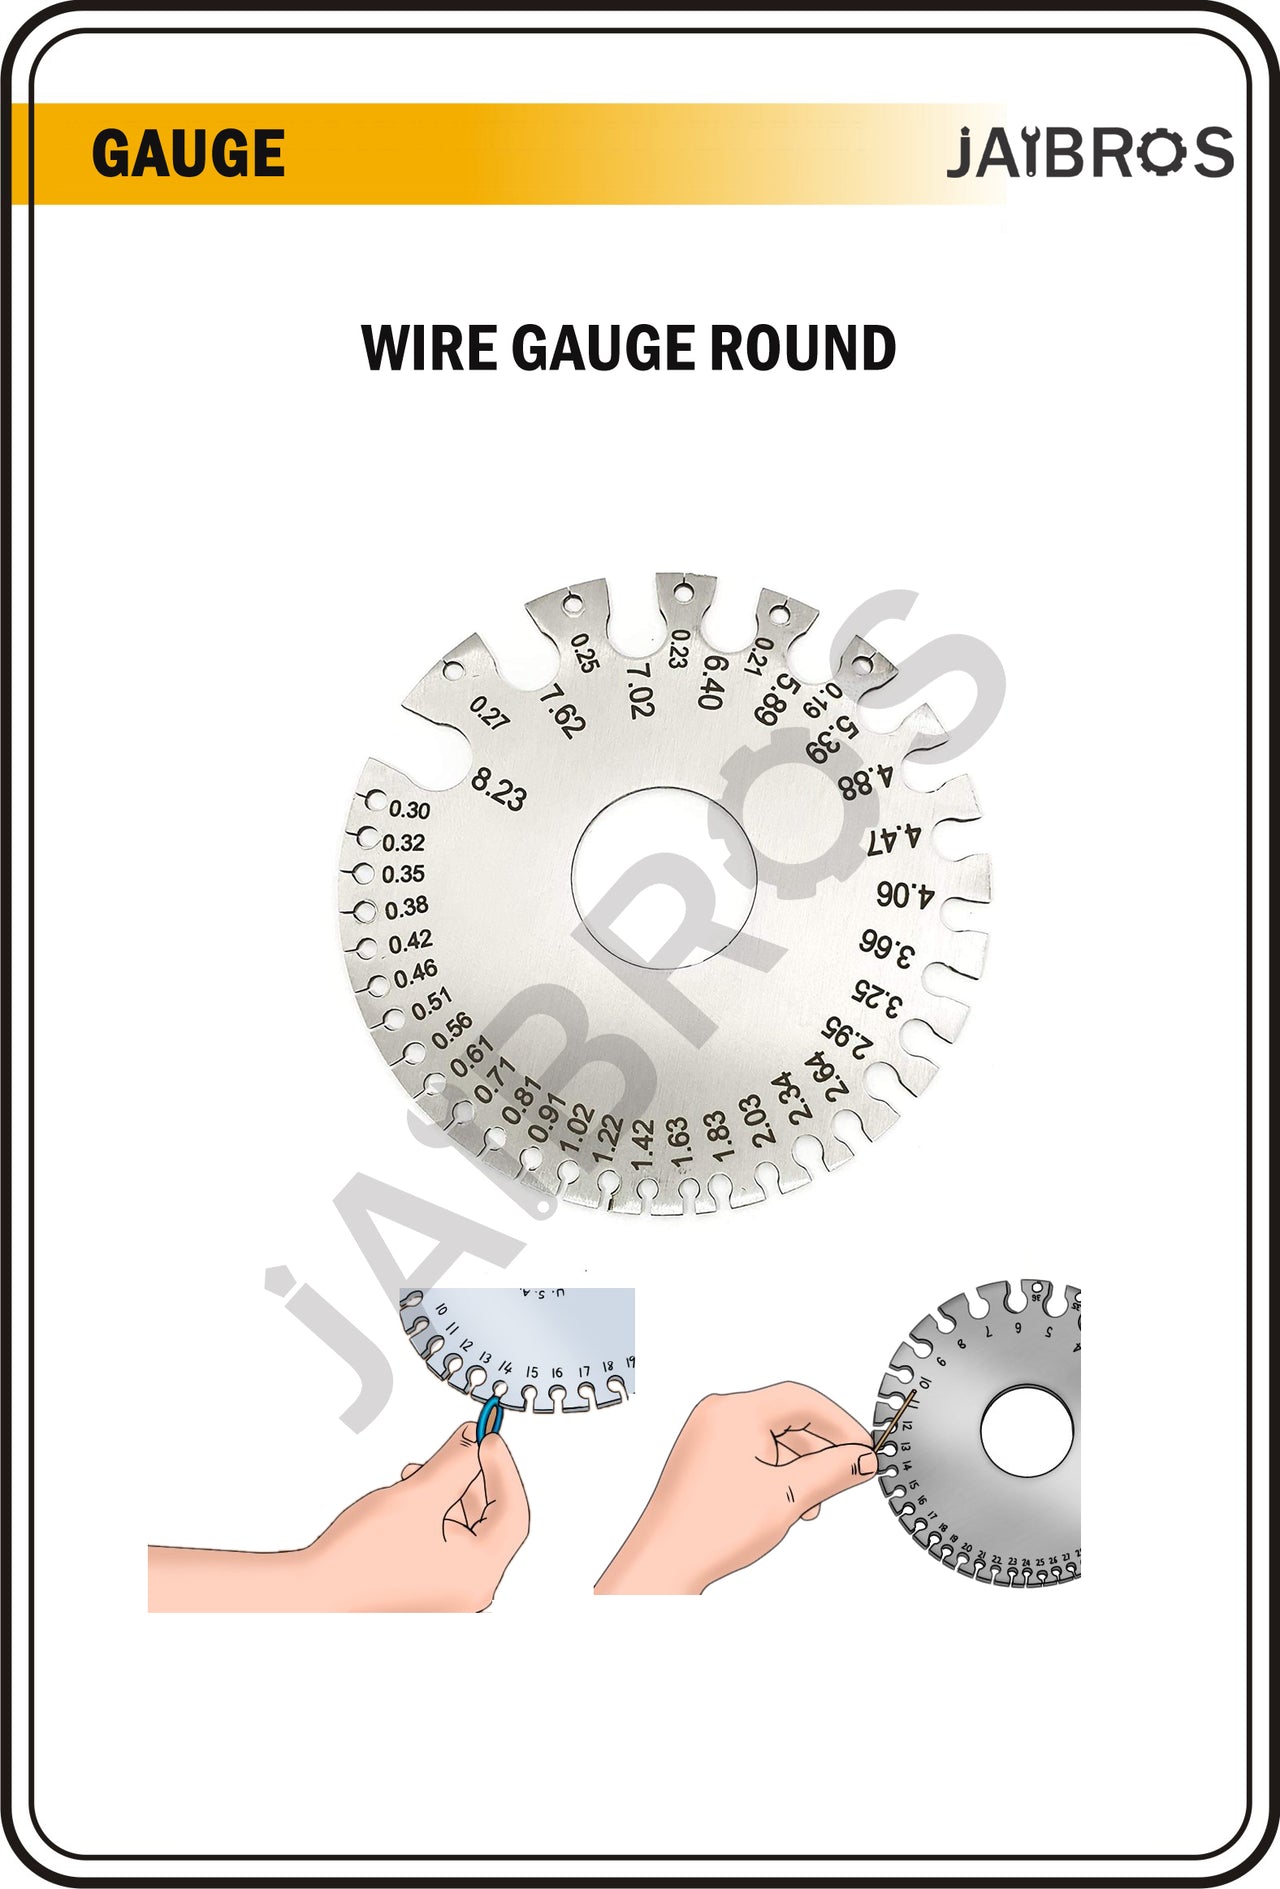 Wire Gauge Round shape